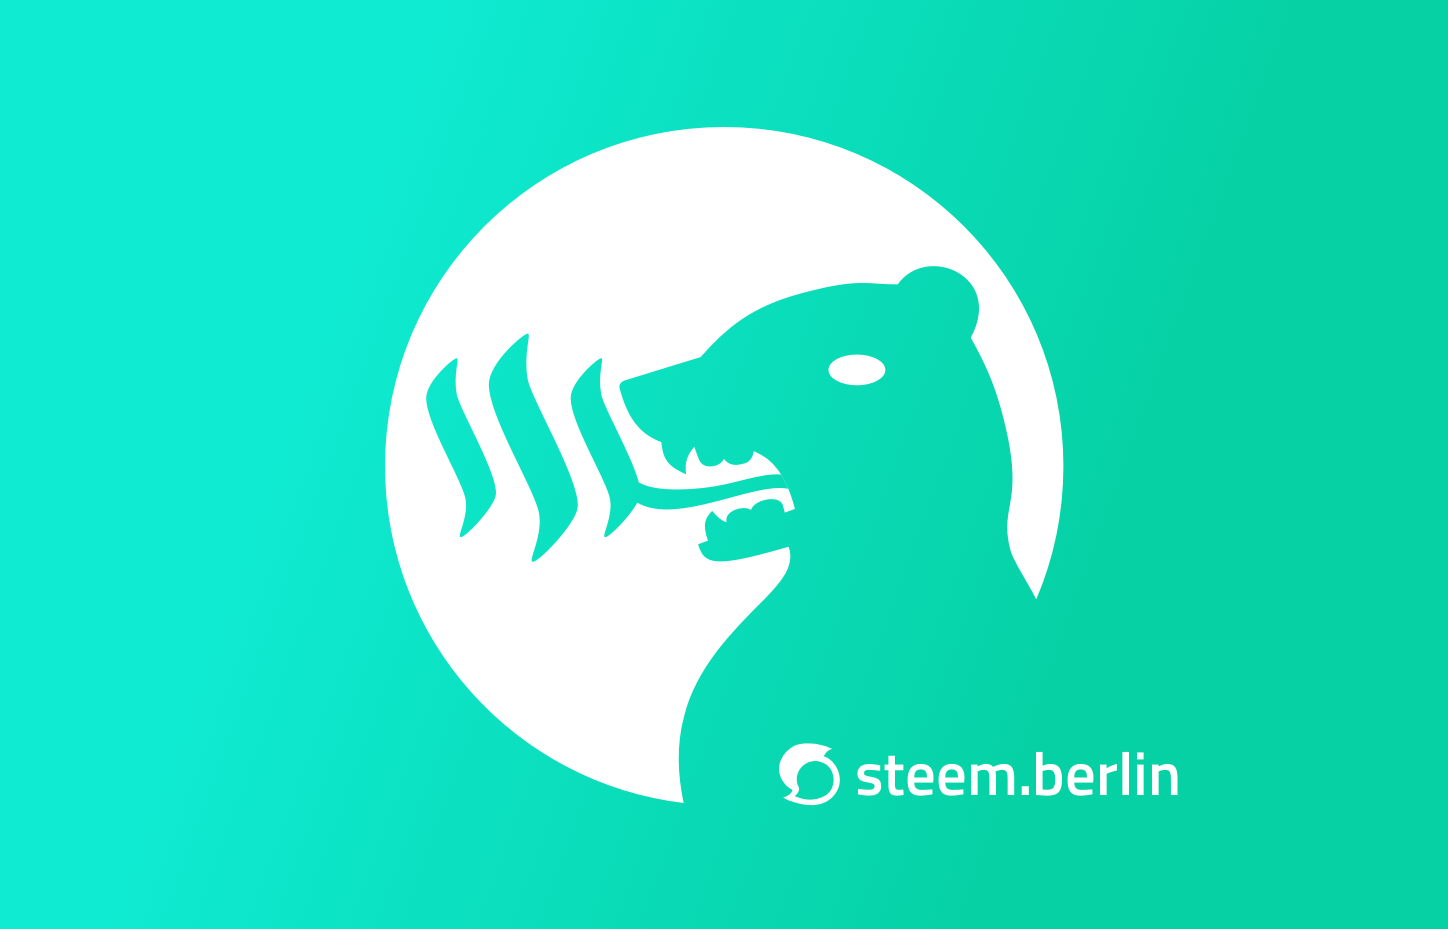 steem.berlin-profile-greengradient.png